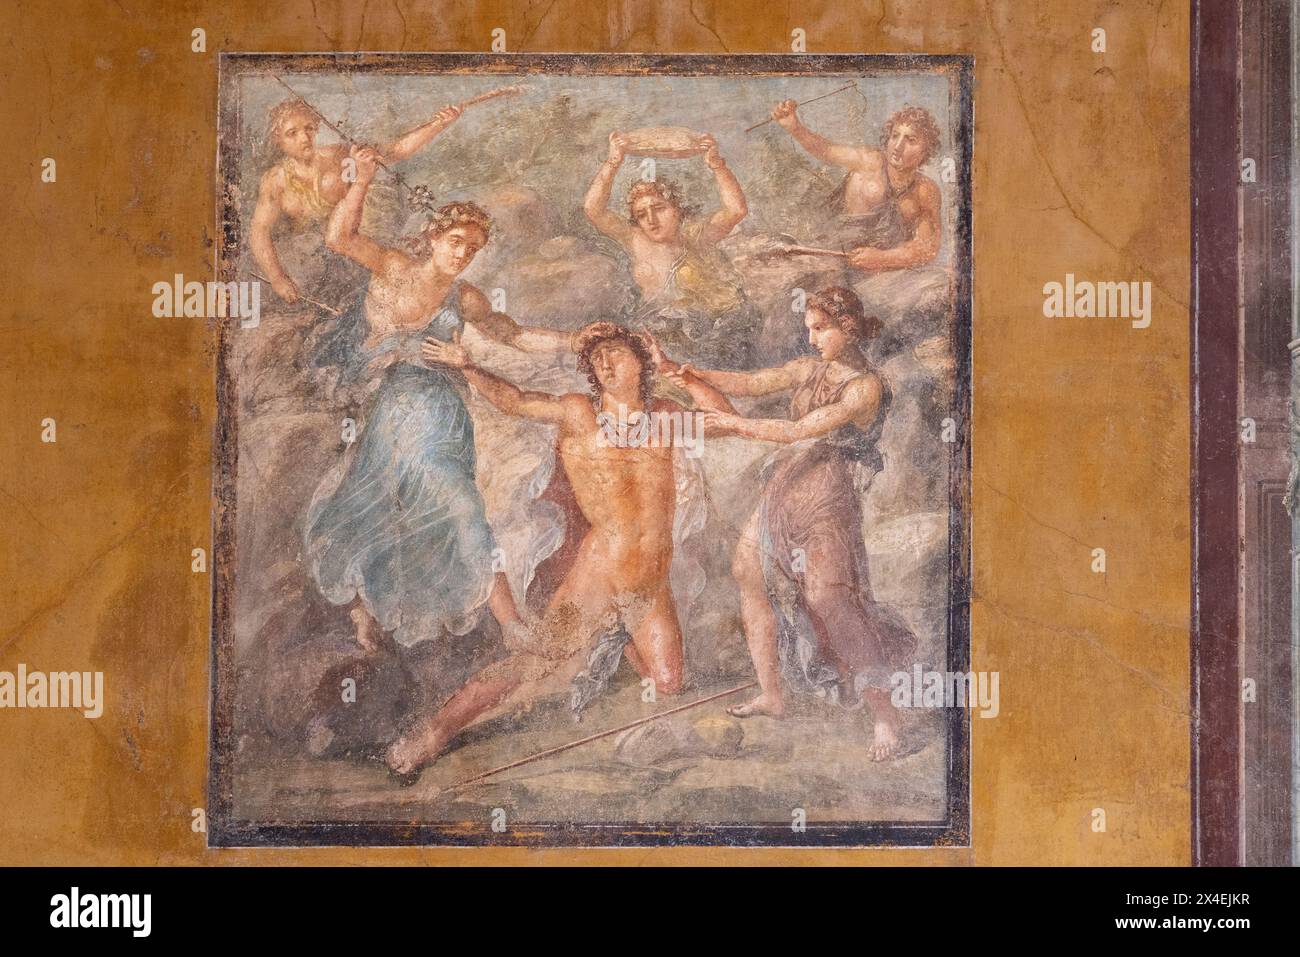 Fresque de Pompéi ; 'la mort de Pentheus', dans la Maison des Vettii, Pompéi Italie, site du patrimoine mondial de l'UNESCO. Peinture romaine antique de Pompéi. Banque D'Images